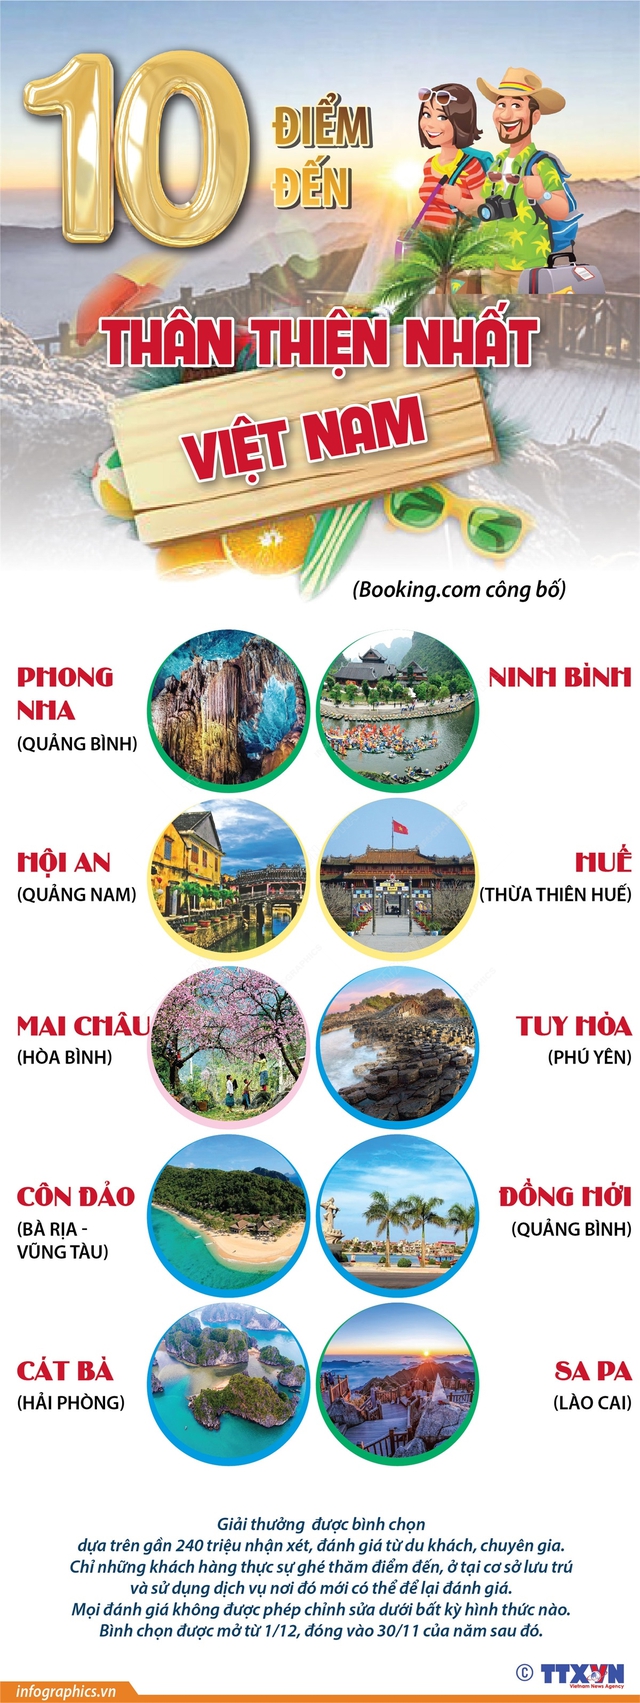 10 điểm đến thân thiện nhất Việt Nam - Ảnh 1.